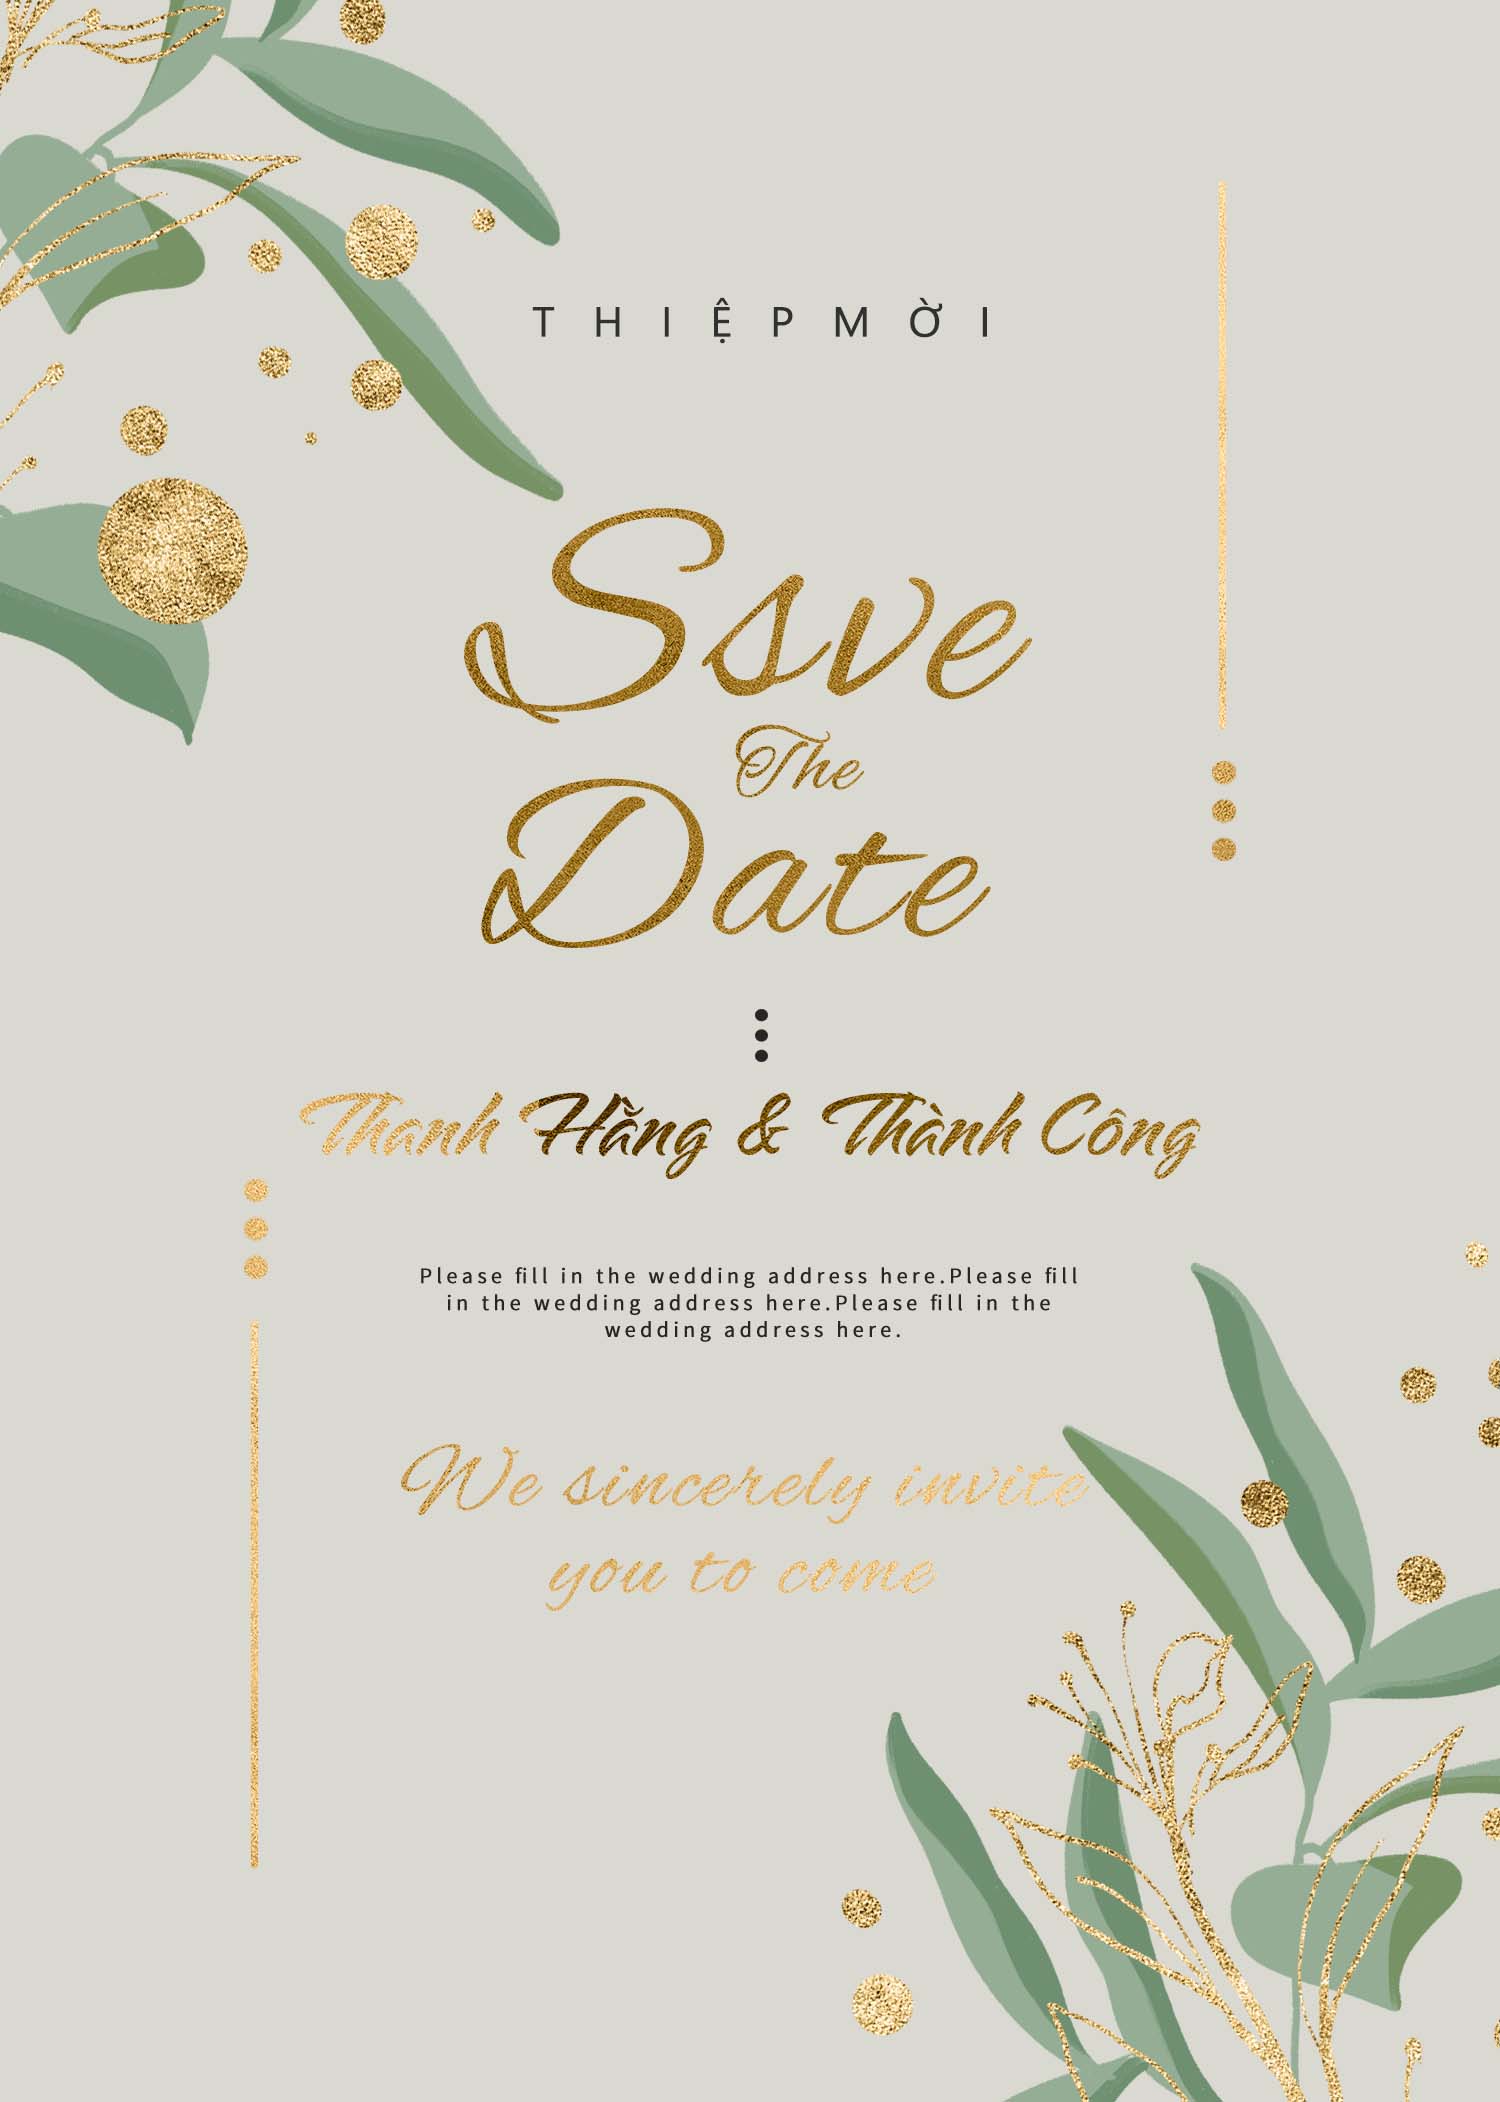 Thiệp cưới Save the date sang trọng bản PSD